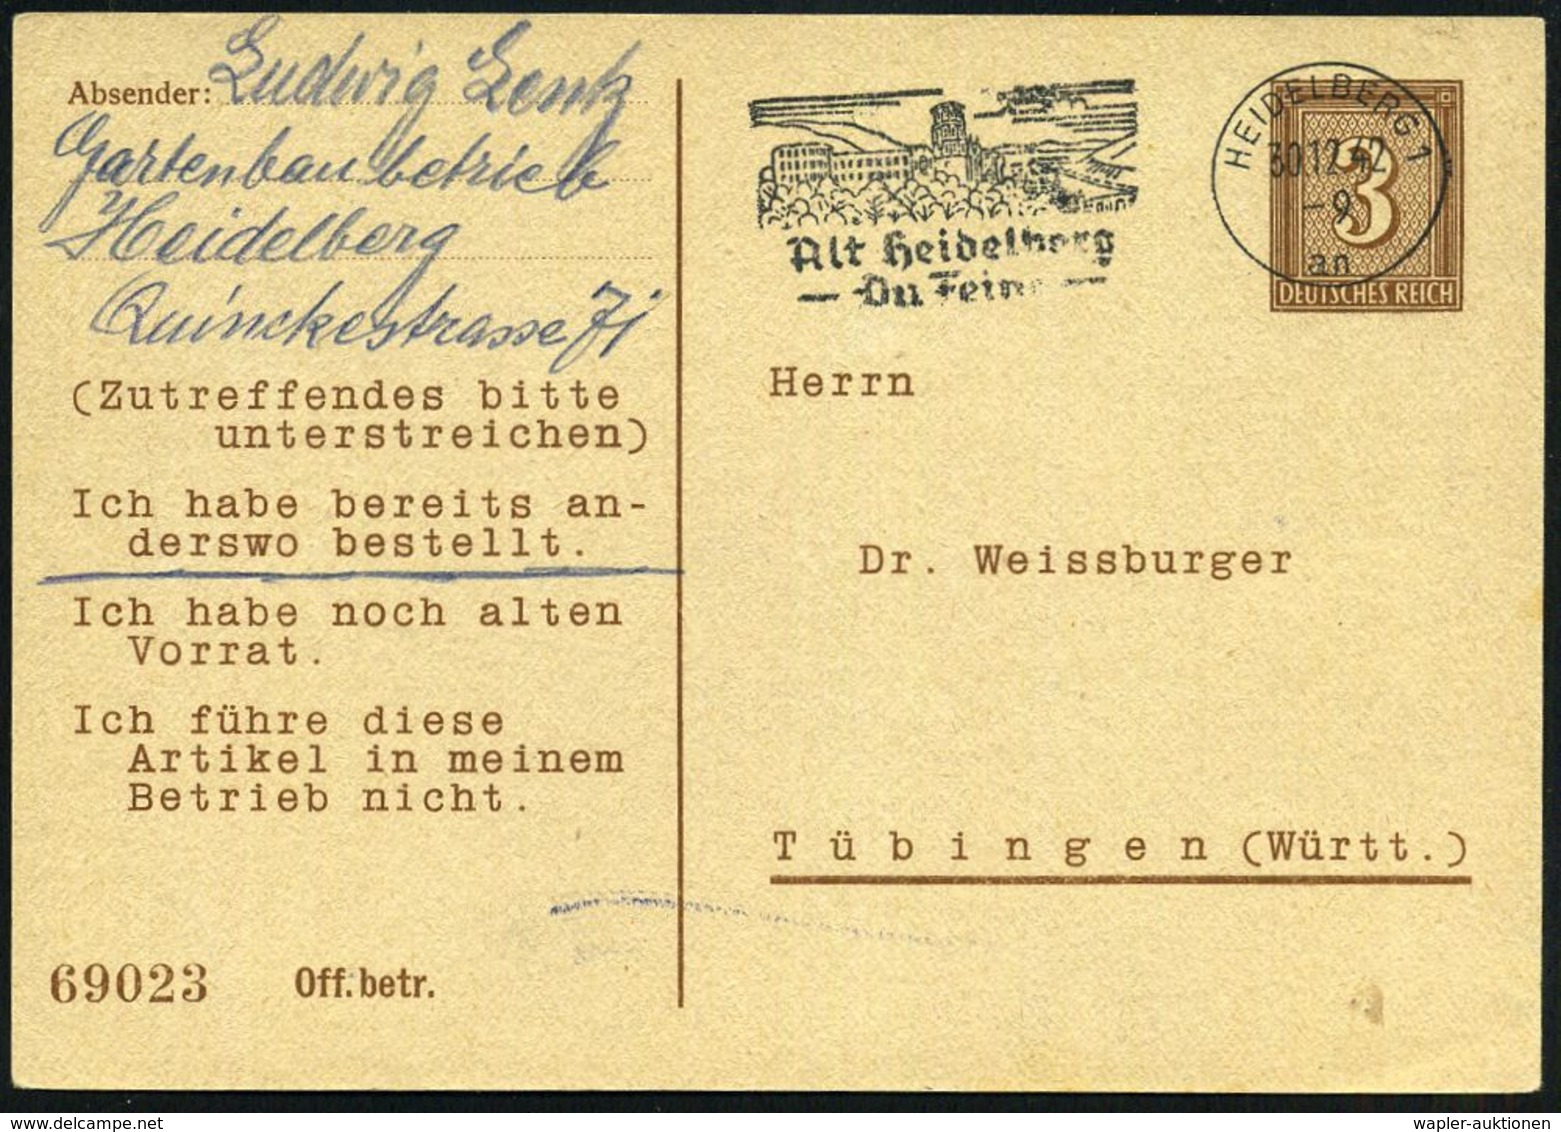 HEIDELBERG 1/ An/ Alt Heidelberg/ Du Feine 1942 (30.12.) MaWSt. (Schloß) = Liedtext Auf PP 3 Pf. Ziffer, Braun: Dr. Weis - Music